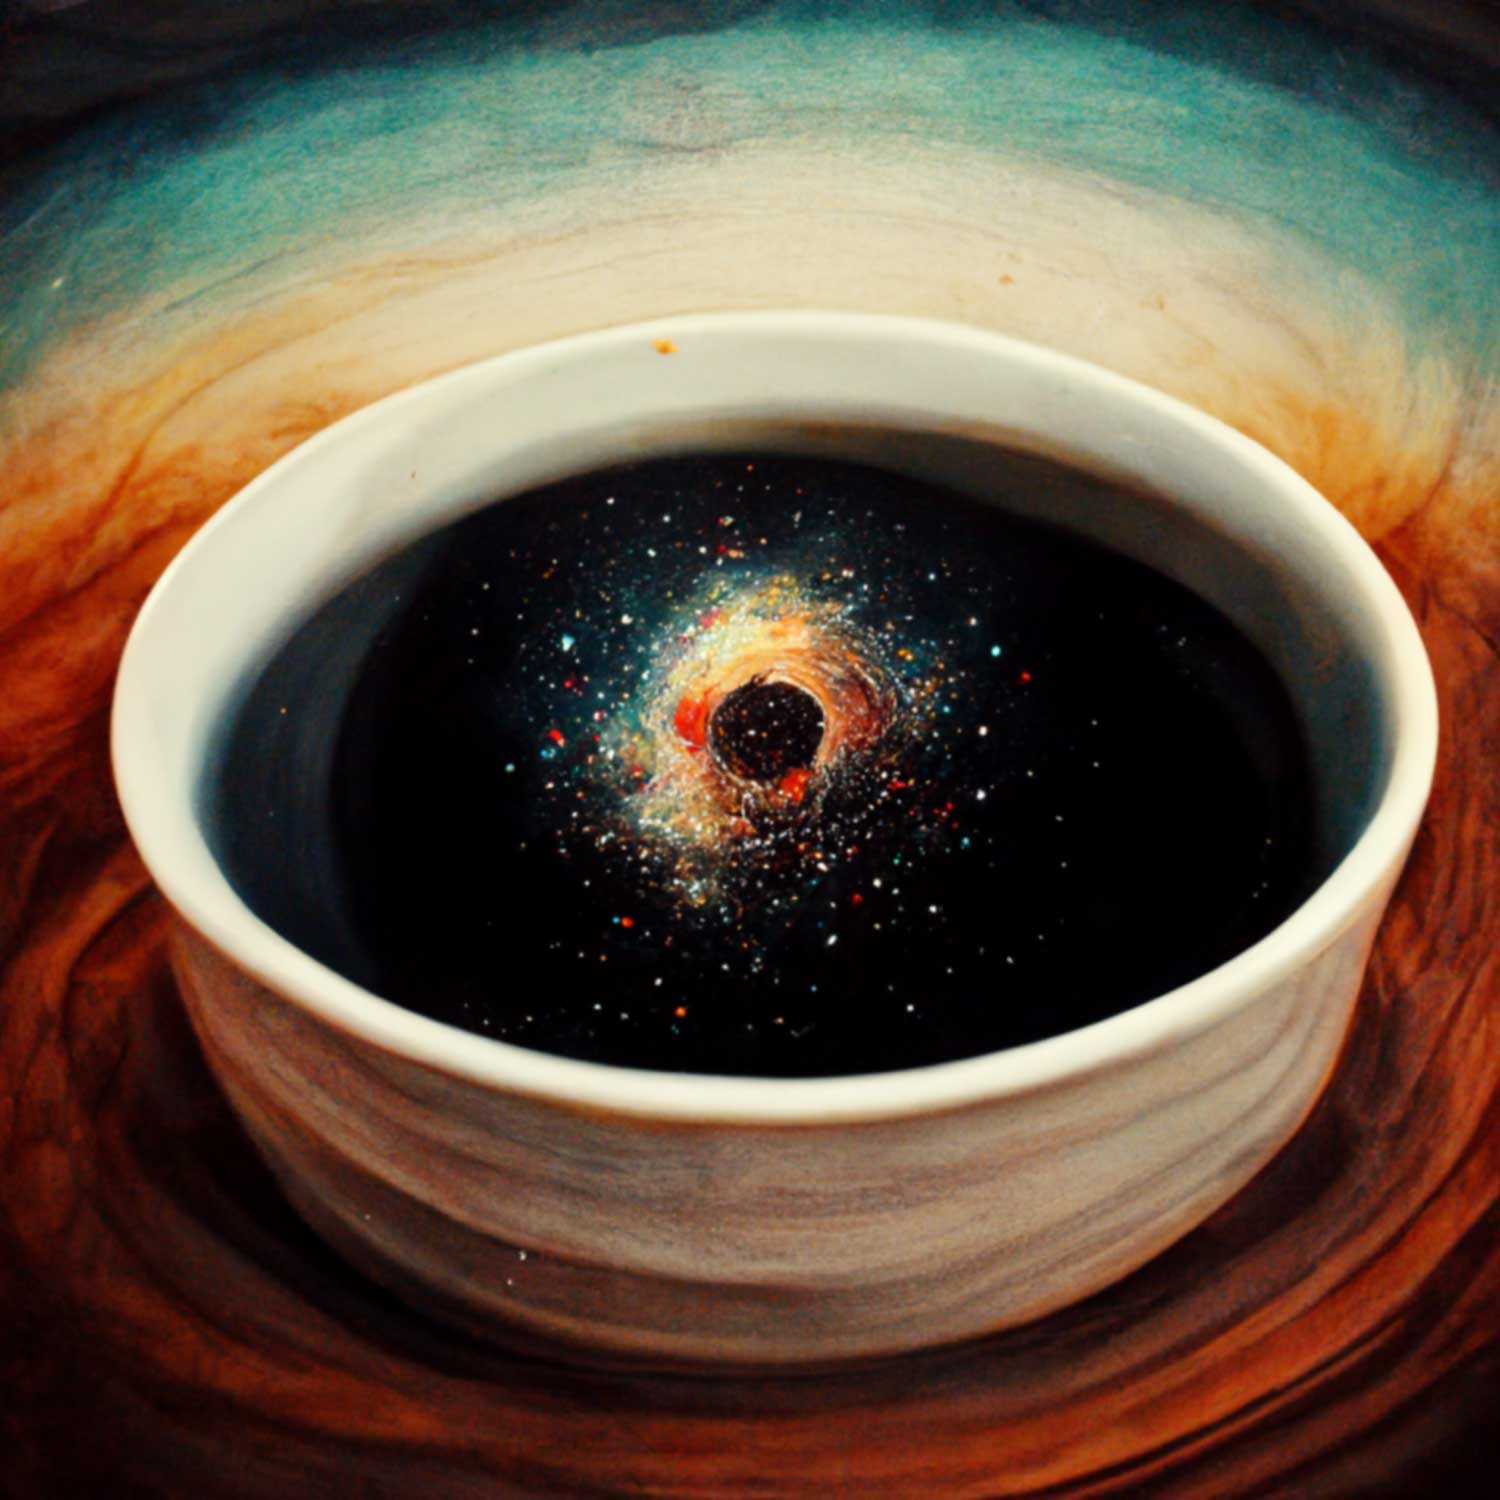 スペシャルティー コーヒー豆専門の自家焙煎店 Blackhole Coffee Roasterのイメージ画像 - カップの中にブラックホールが煌めくイメージ